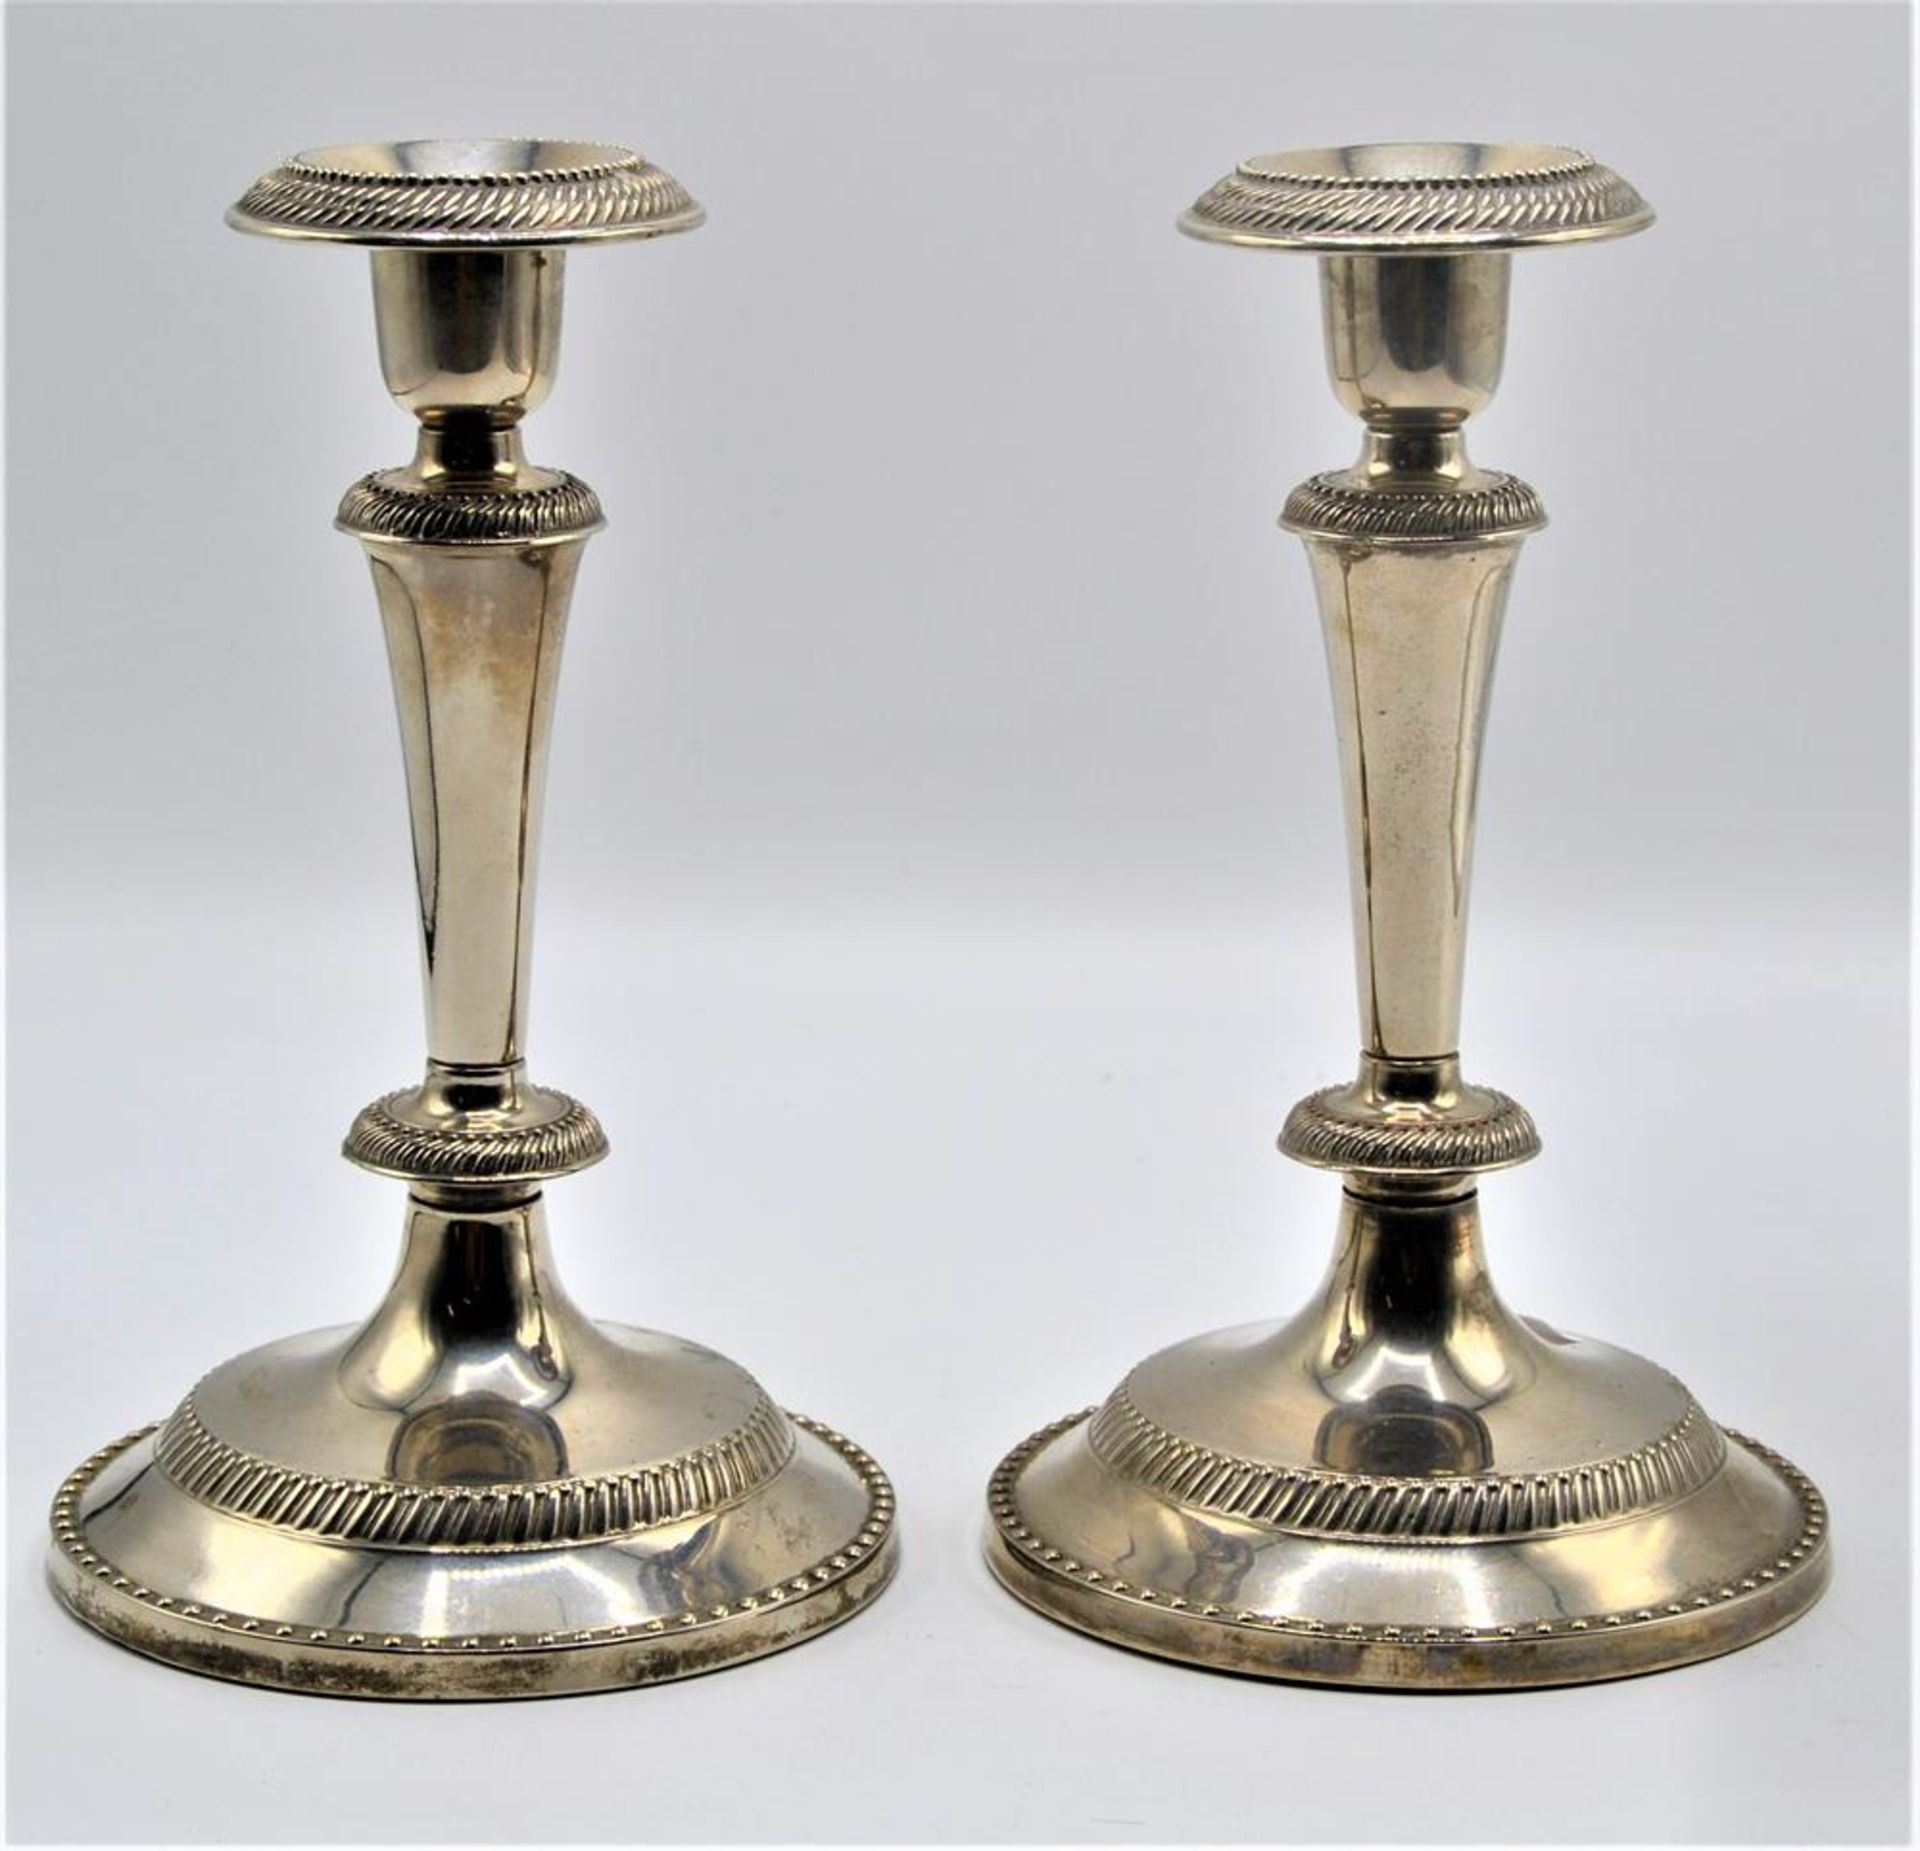 Paar Kerzenständer, Zinklegierung versilbert, Hersteller M.M. China, zerlegbar, ca. 18,5cm